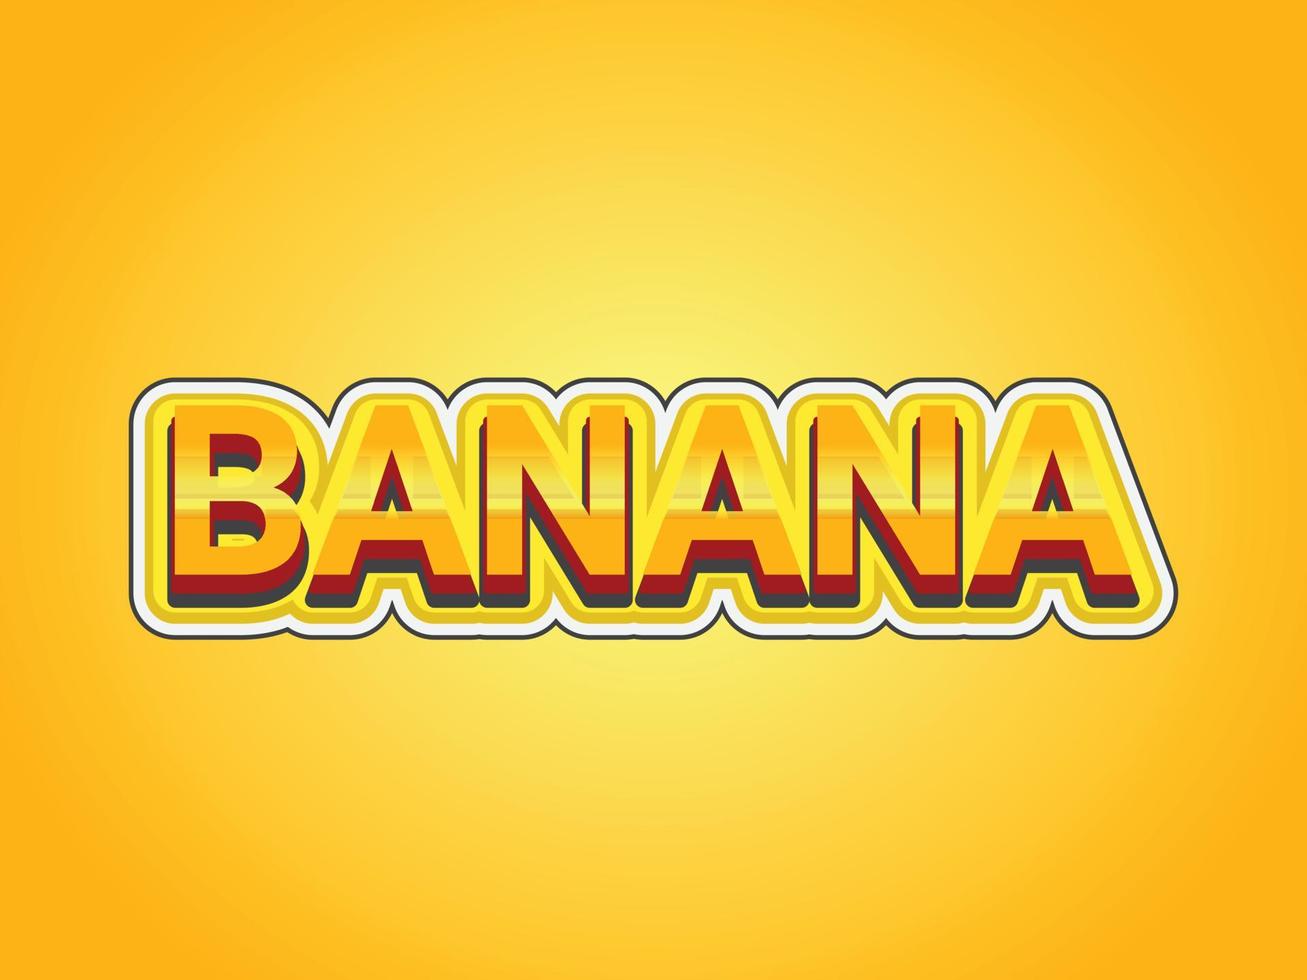 modelo de efeito de texto de banana com uso de estilo 3d em negrito para logotipo vetor